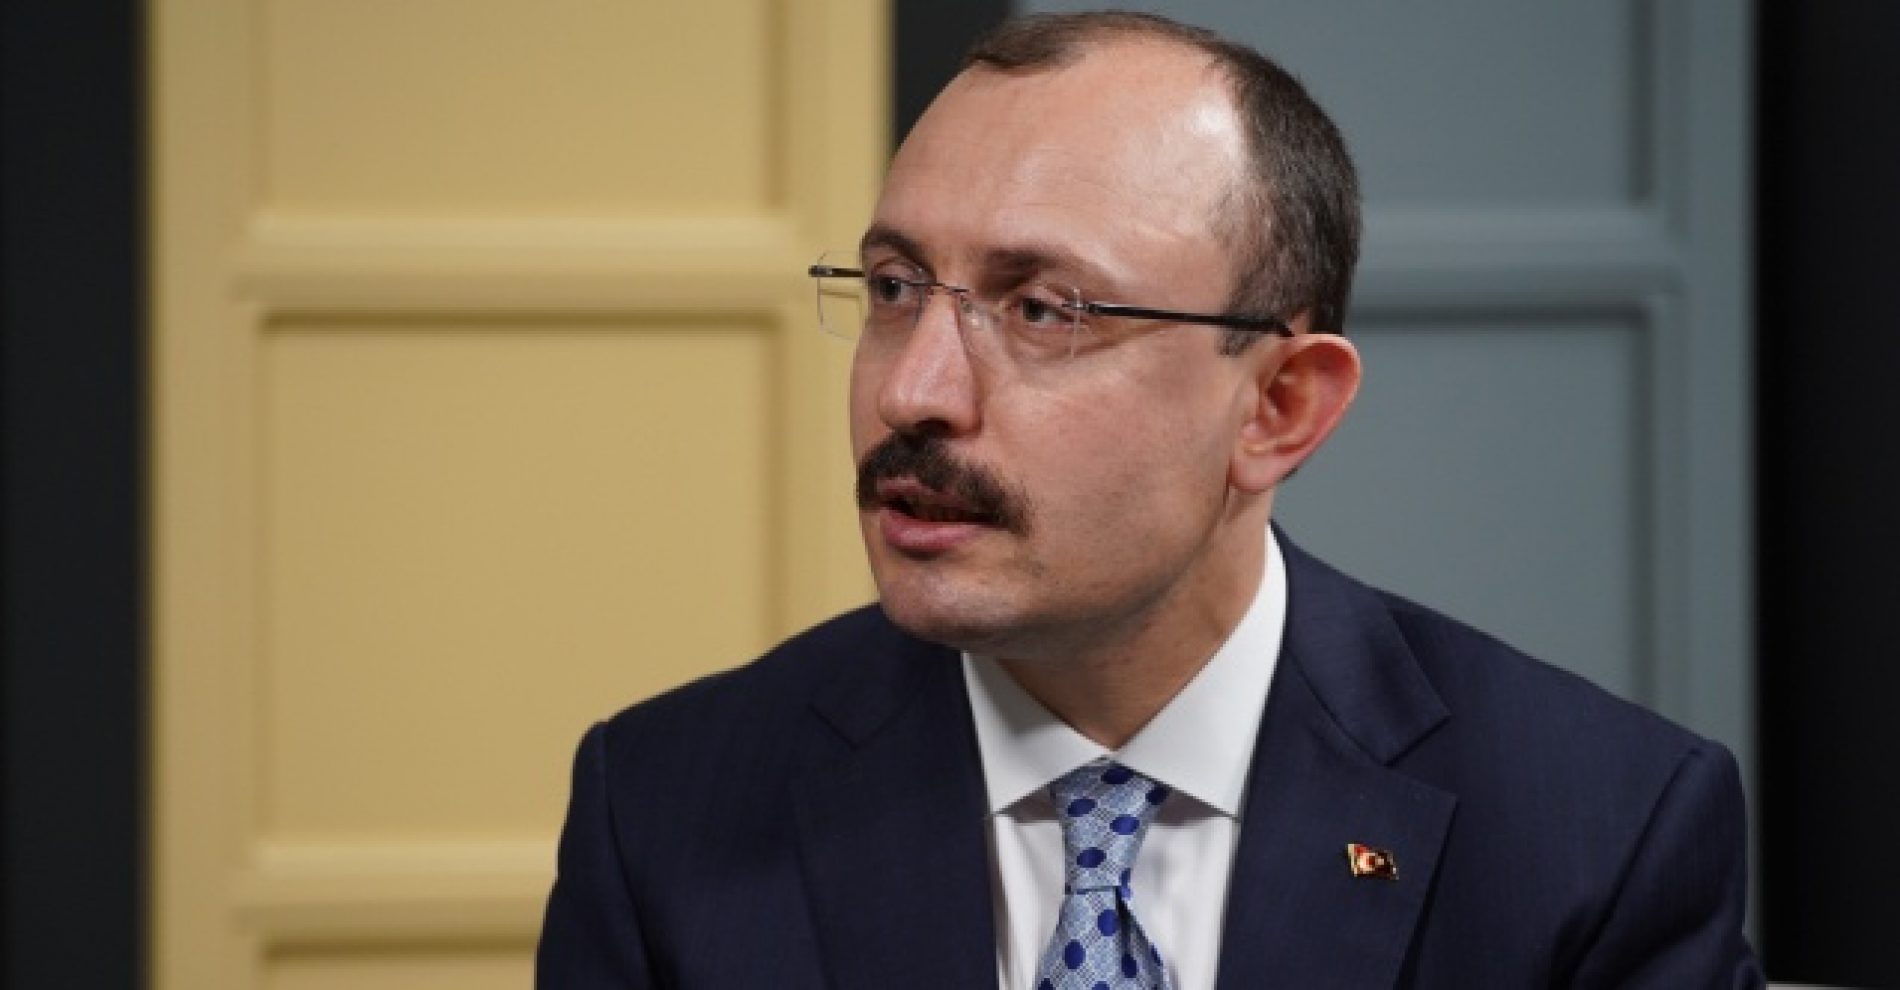 Turski ministar trgovine: Bosna i Hercegovina je država sa potencijalom